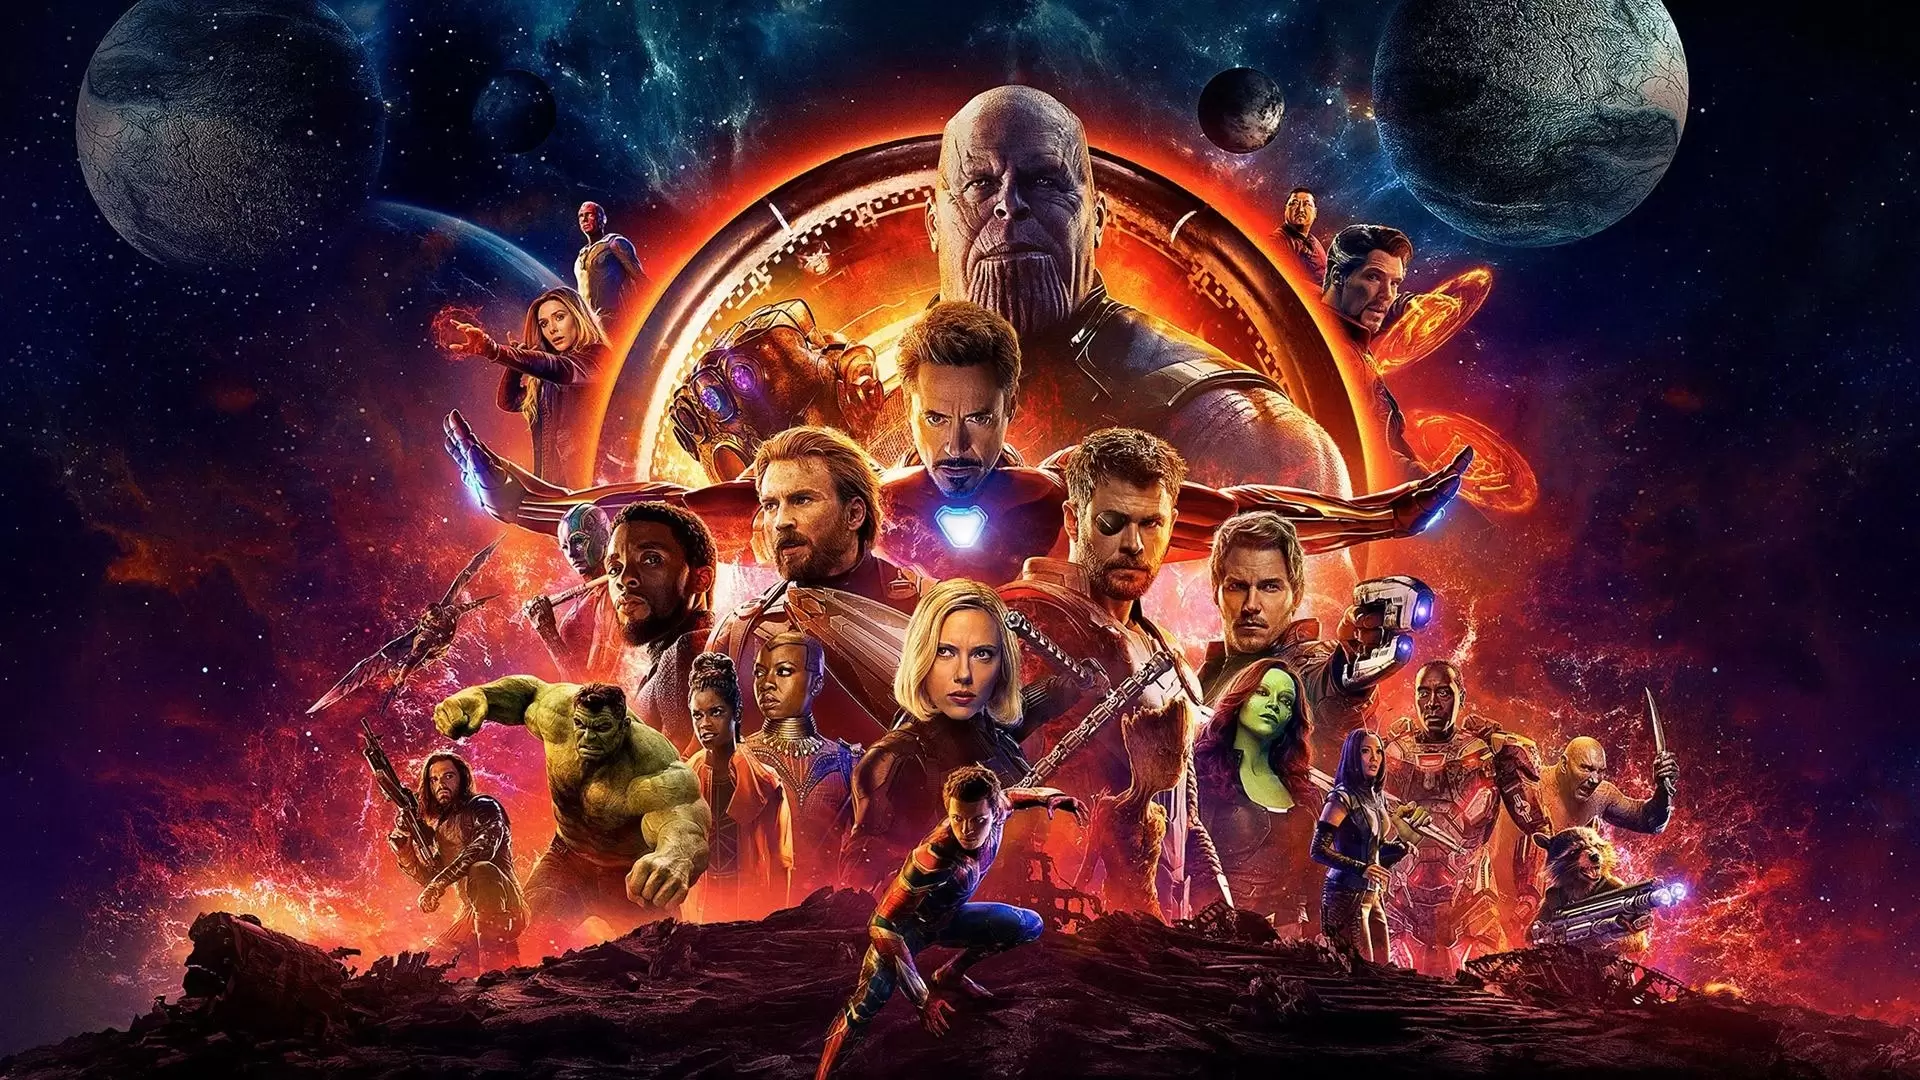 دانلود فیلم Avengers: Infinity War 2018 (انتقام جویان: جنگ بی نهایت) با زیرنویس فارسی و تماشای آنلاین